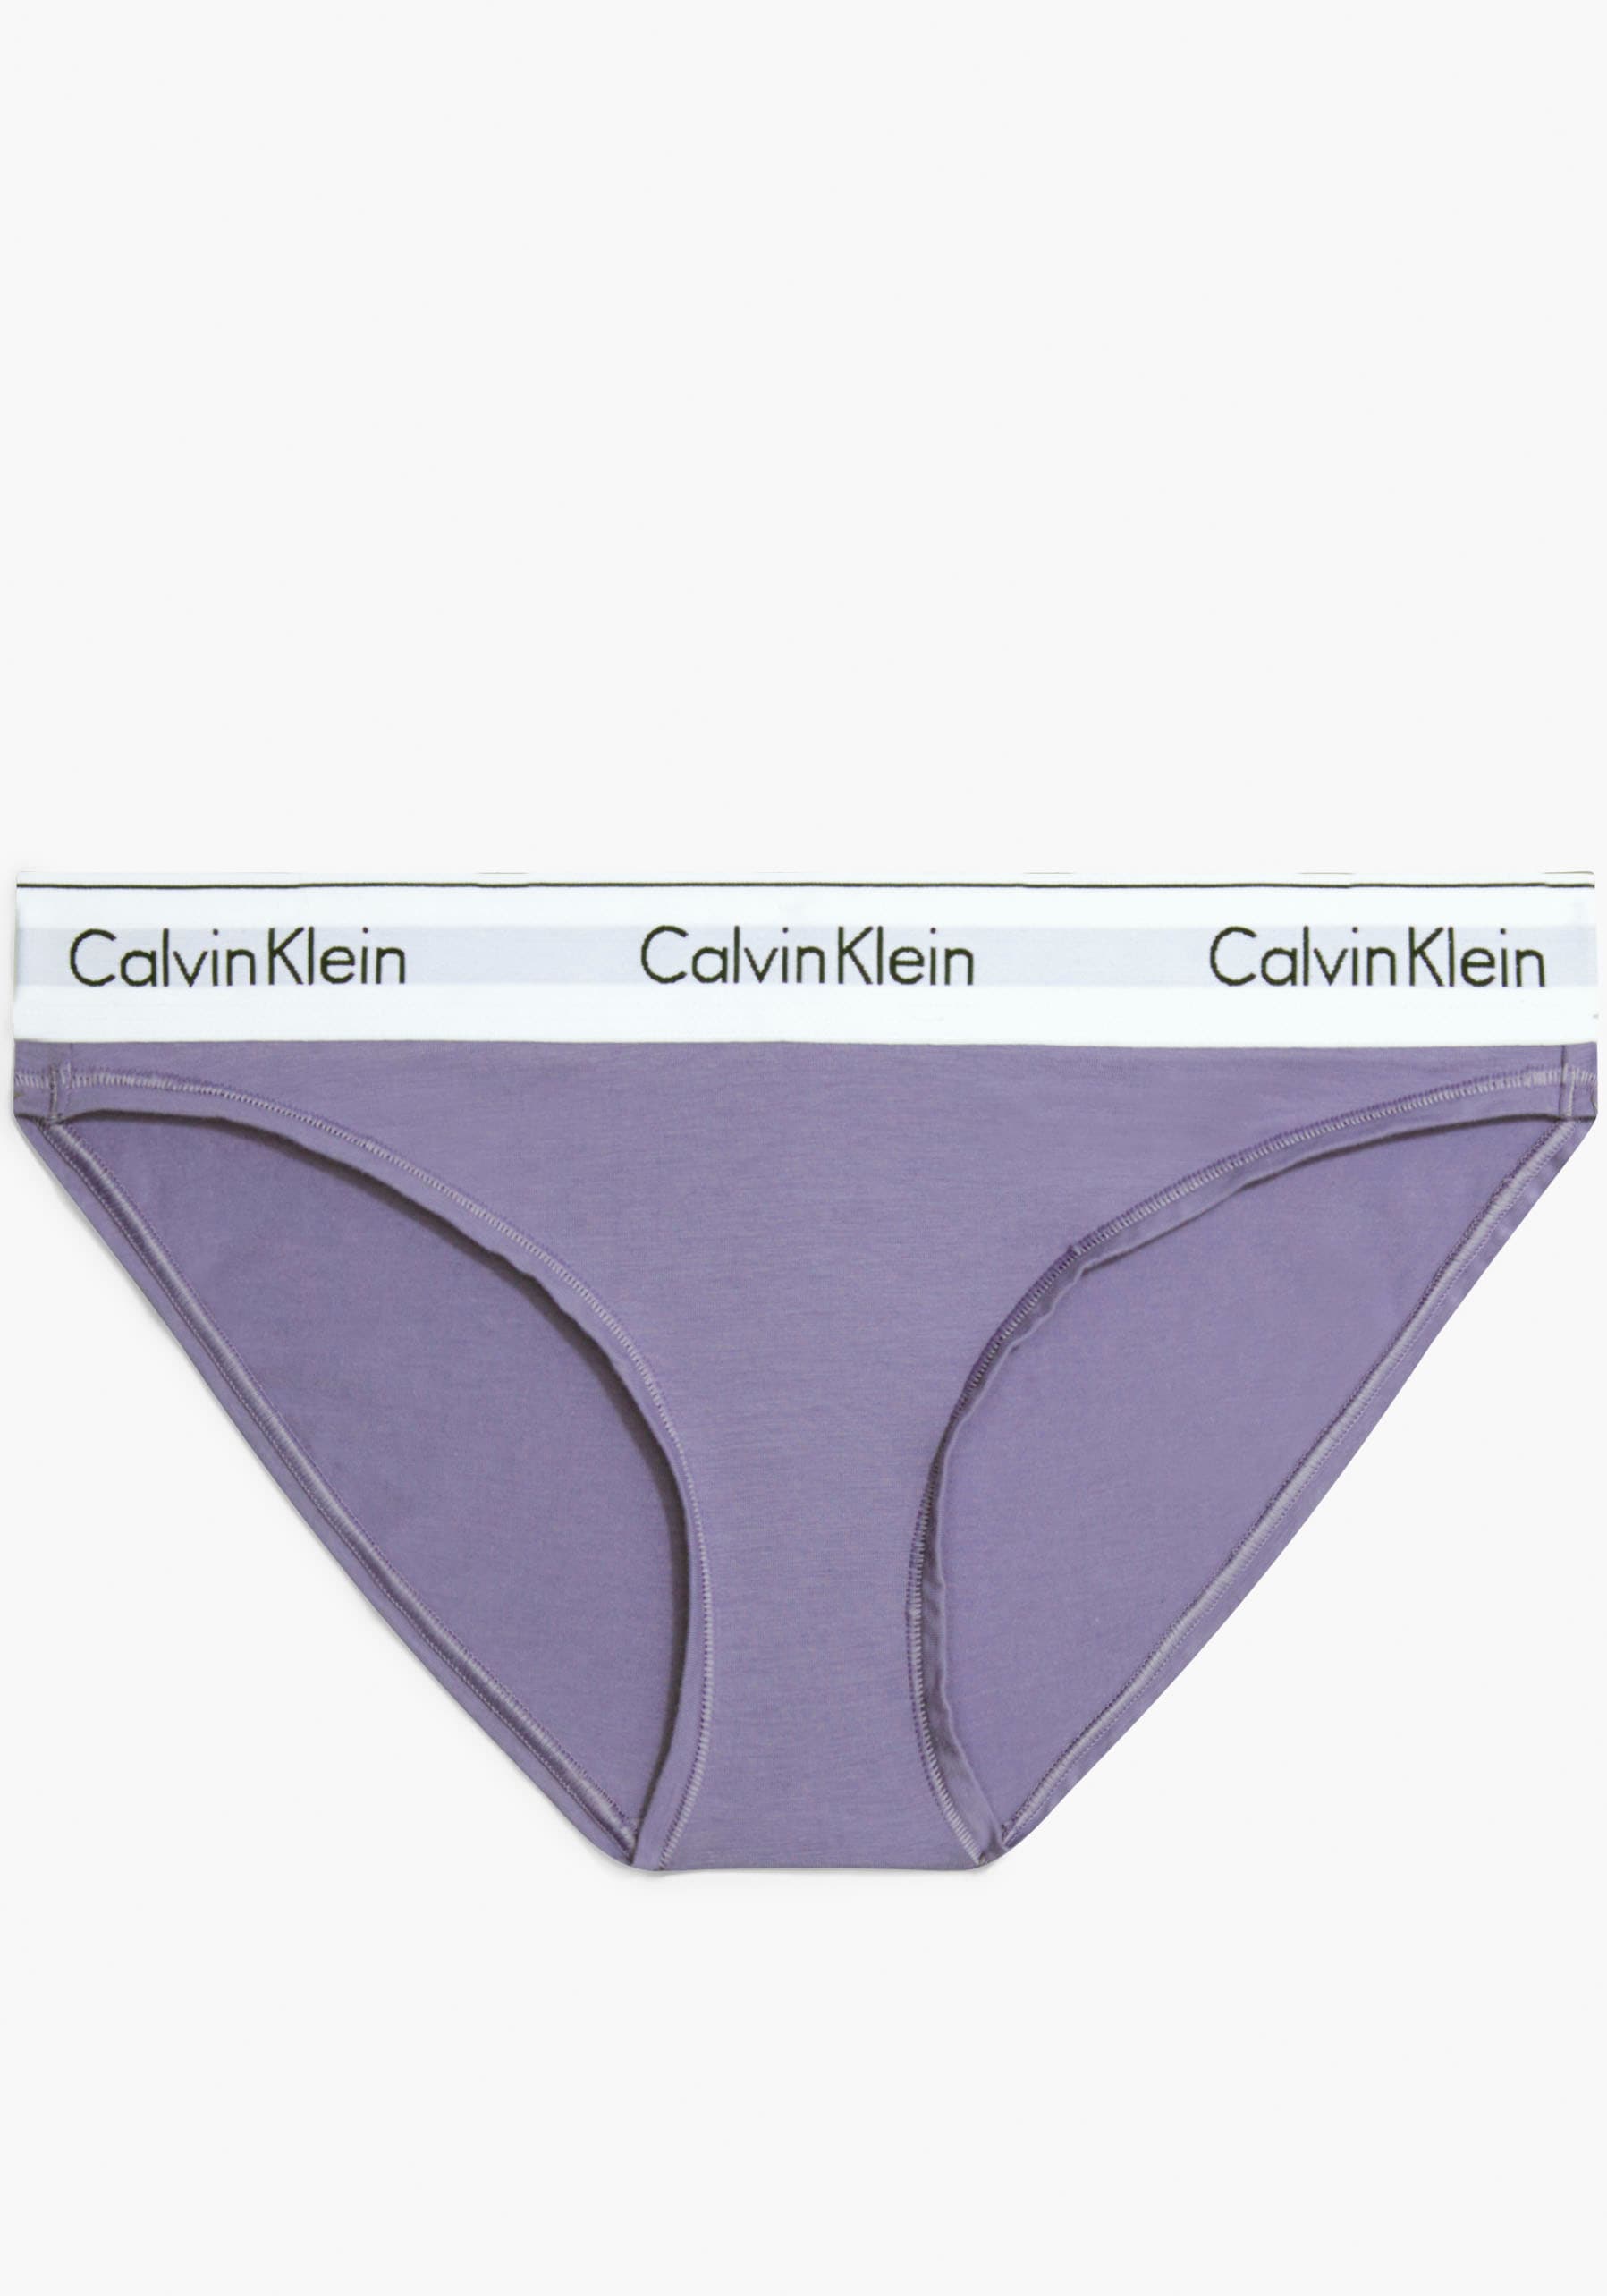 Bündchen Calvin Klein breitem mit COTTON«, Jelmoli-Versand Schweiz bei Bikinislip shoppen online »MODERN